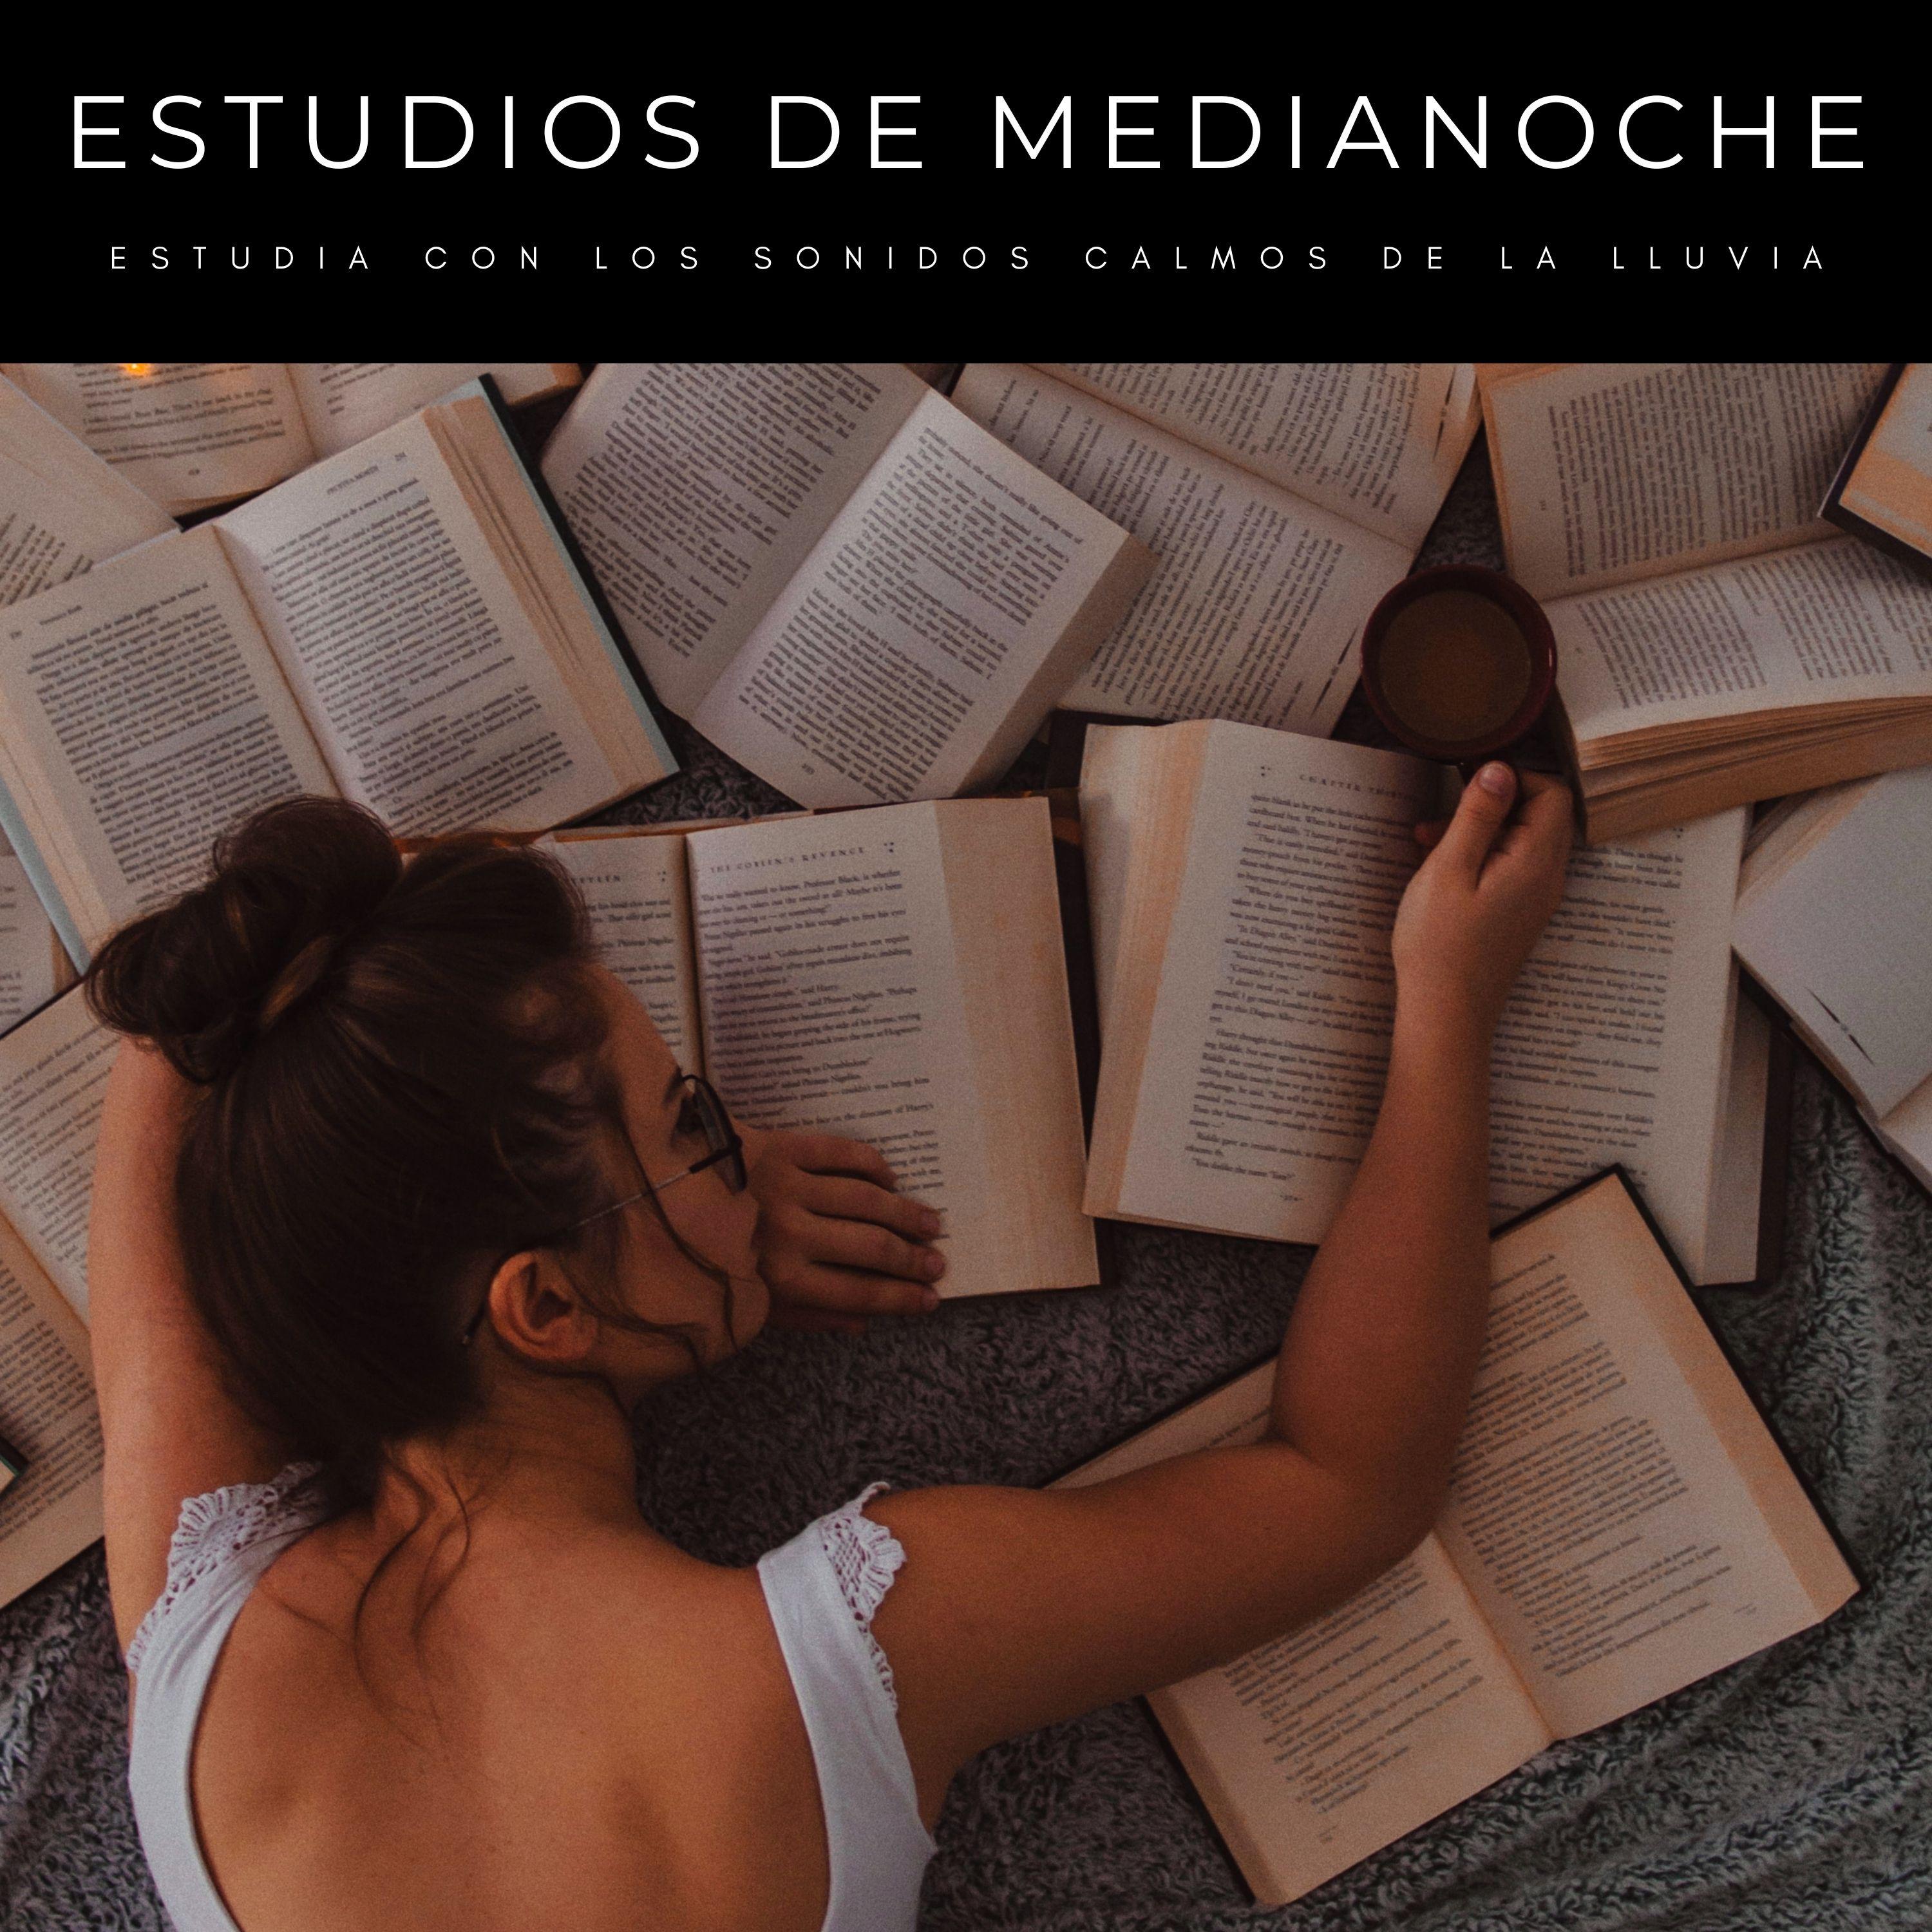 Colectivo de Estudios Encantados - 10:00 pm